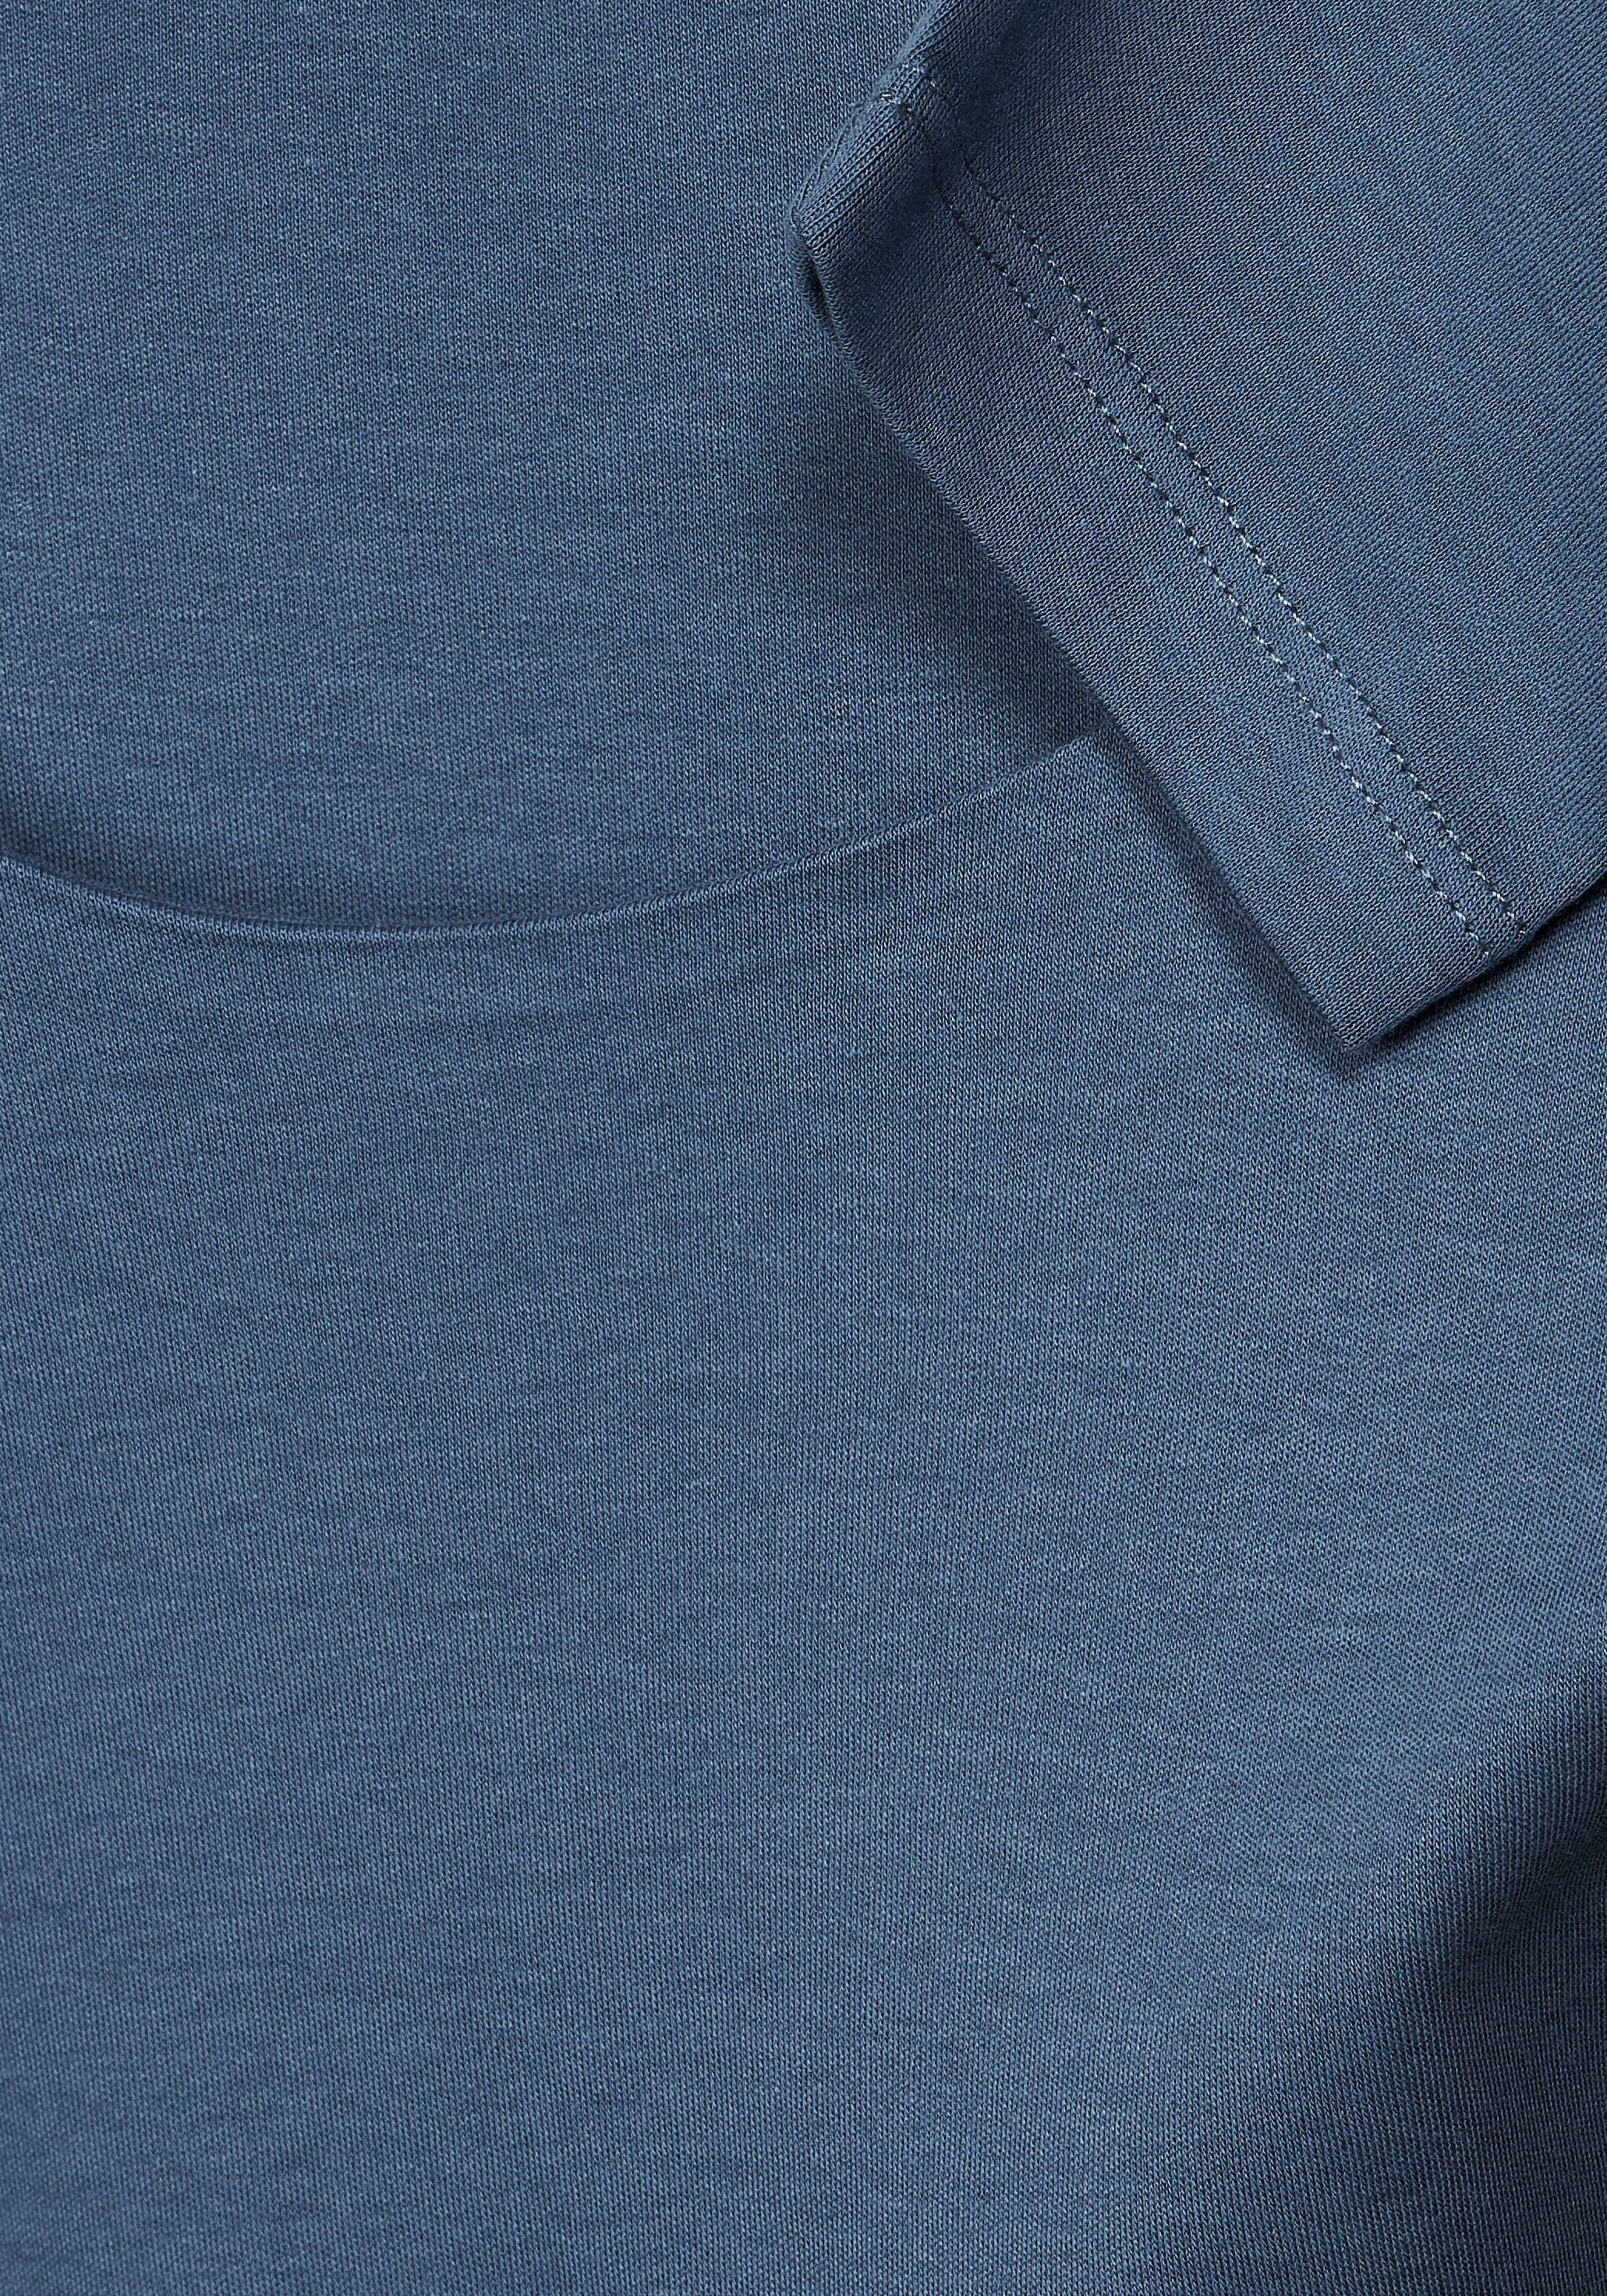 bay dark STREET Style ONE Pania Unifarbe in blue schlichter 3/4-Arm-Shirt